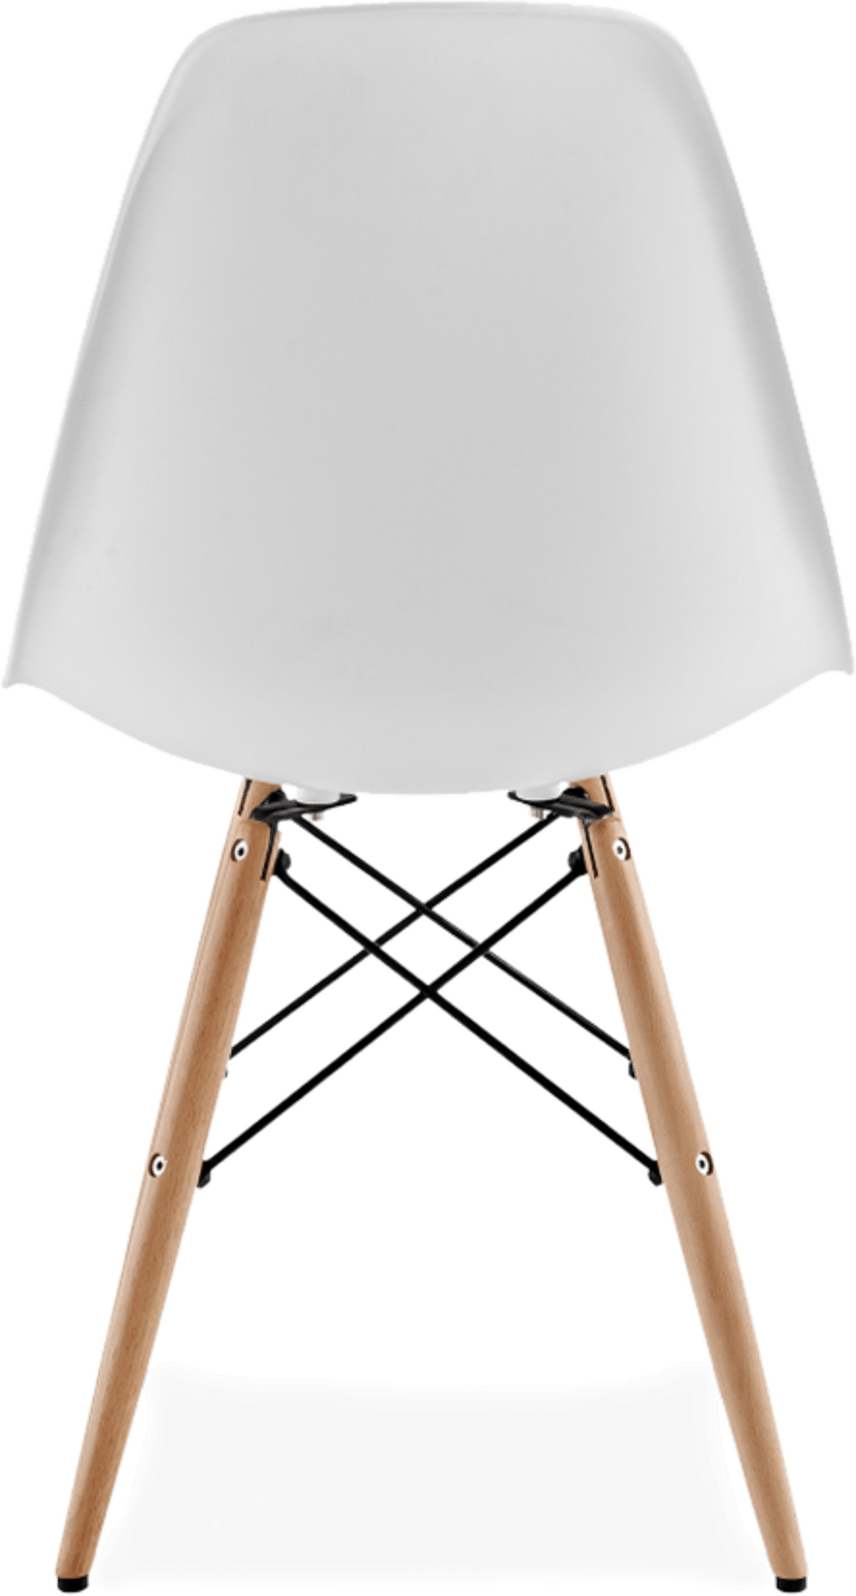 Chaise de style DSW Mauve/Light Wood image.